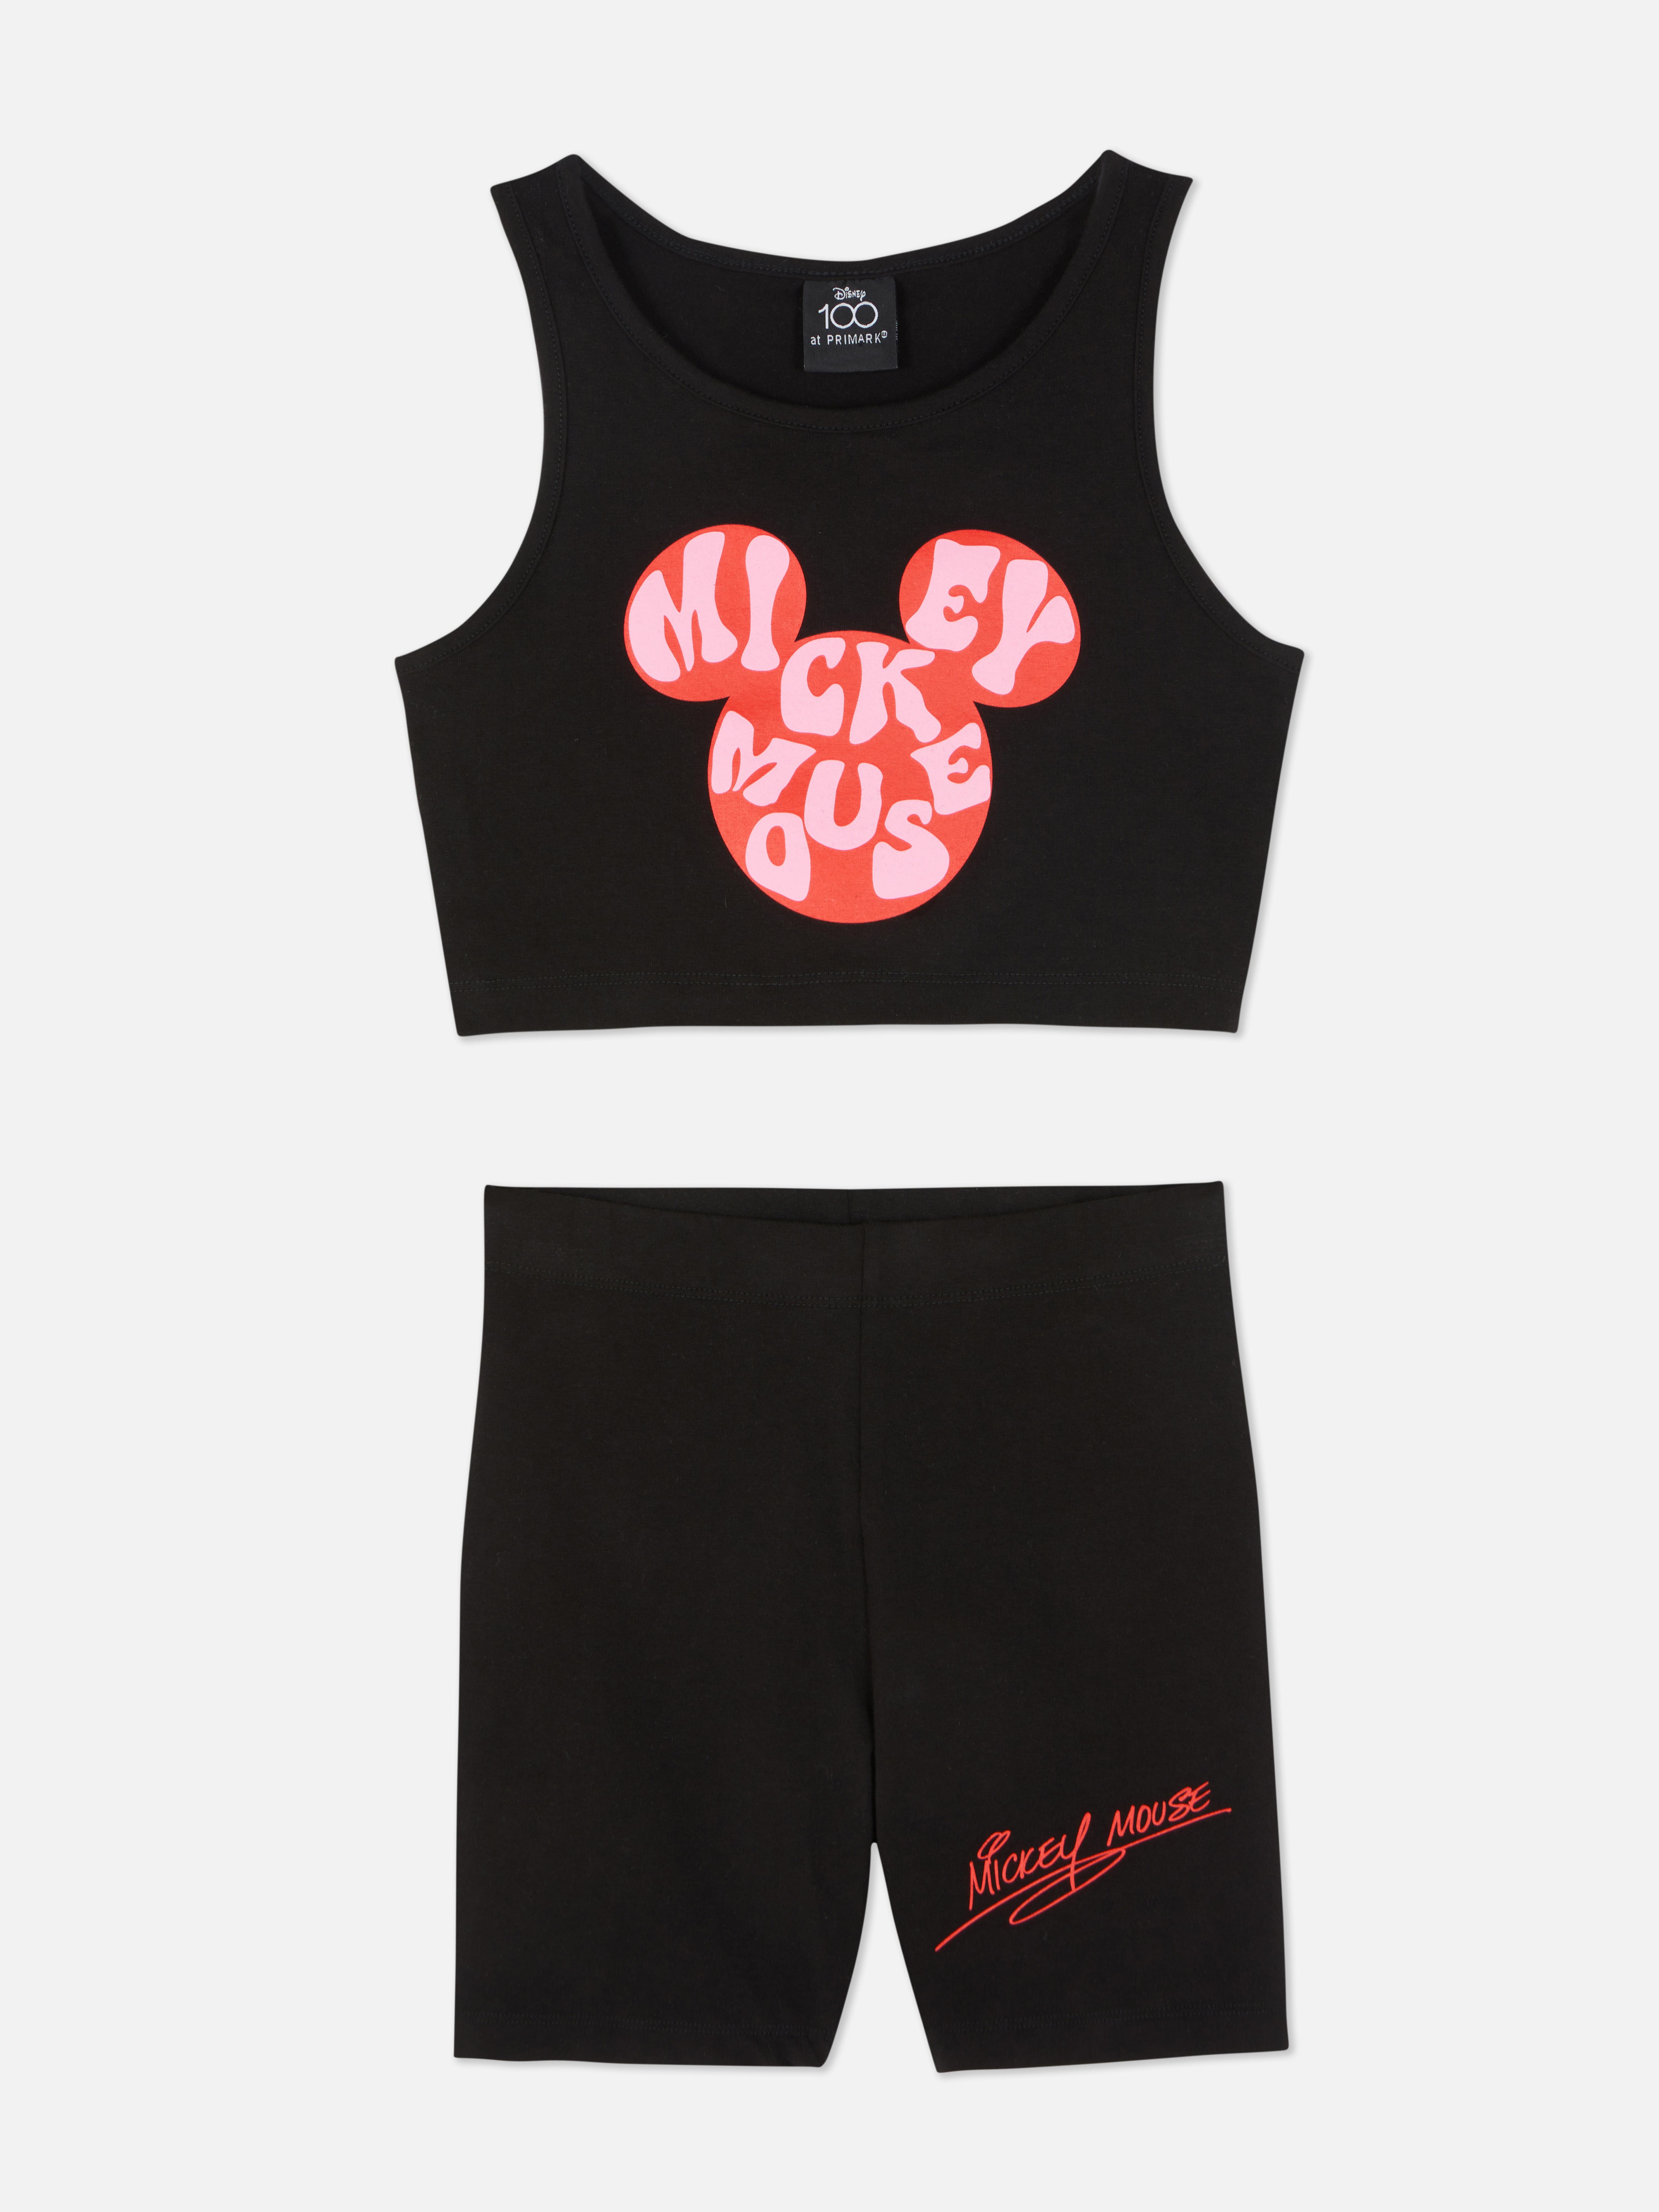 „Disney Micky Maus Originals“ Oberteil und Shorts